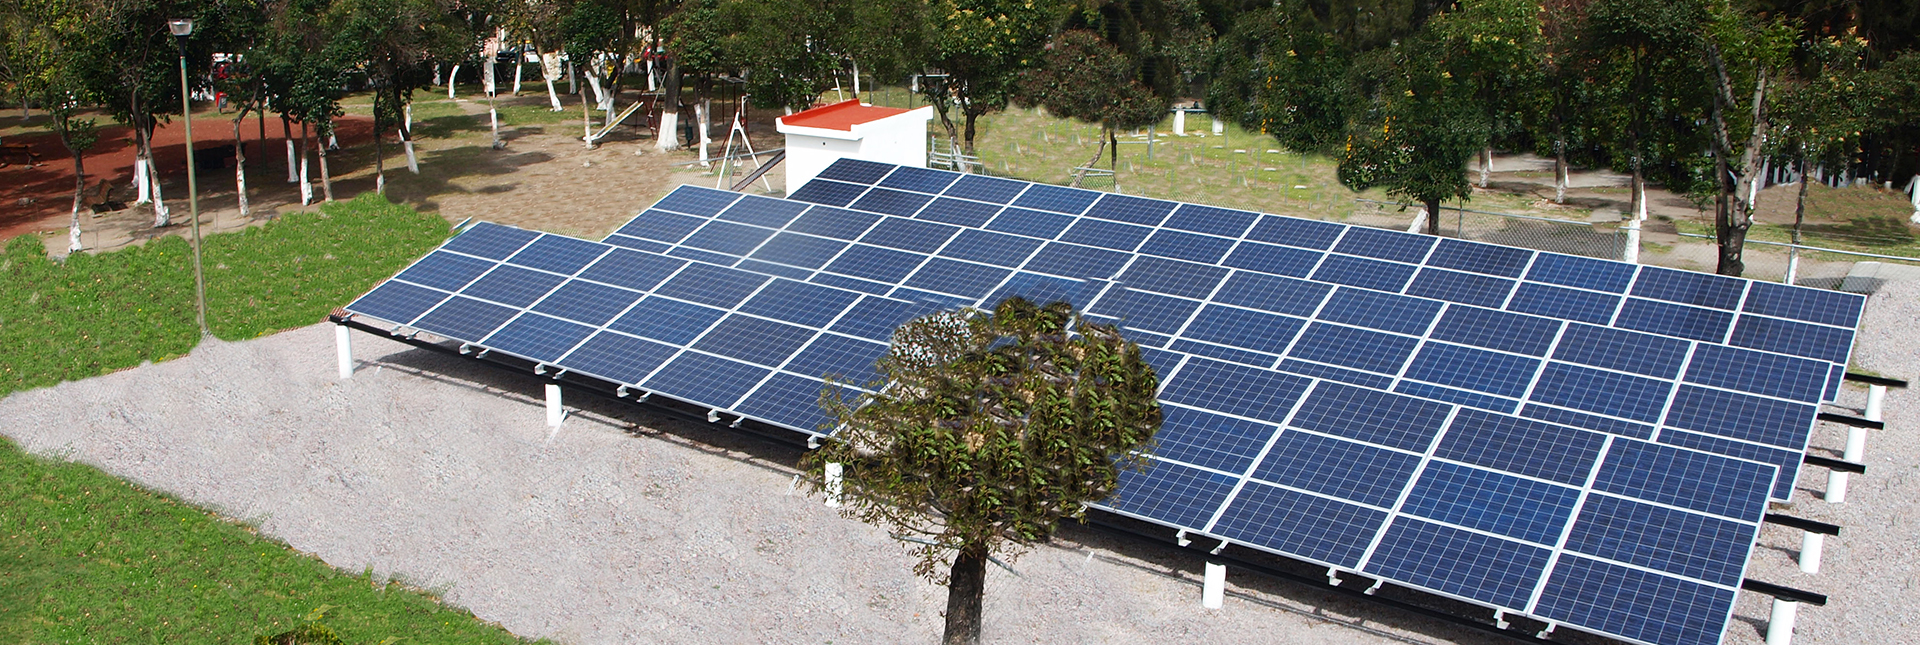 Desde kits residenciales hasta parques fotovoltaicos